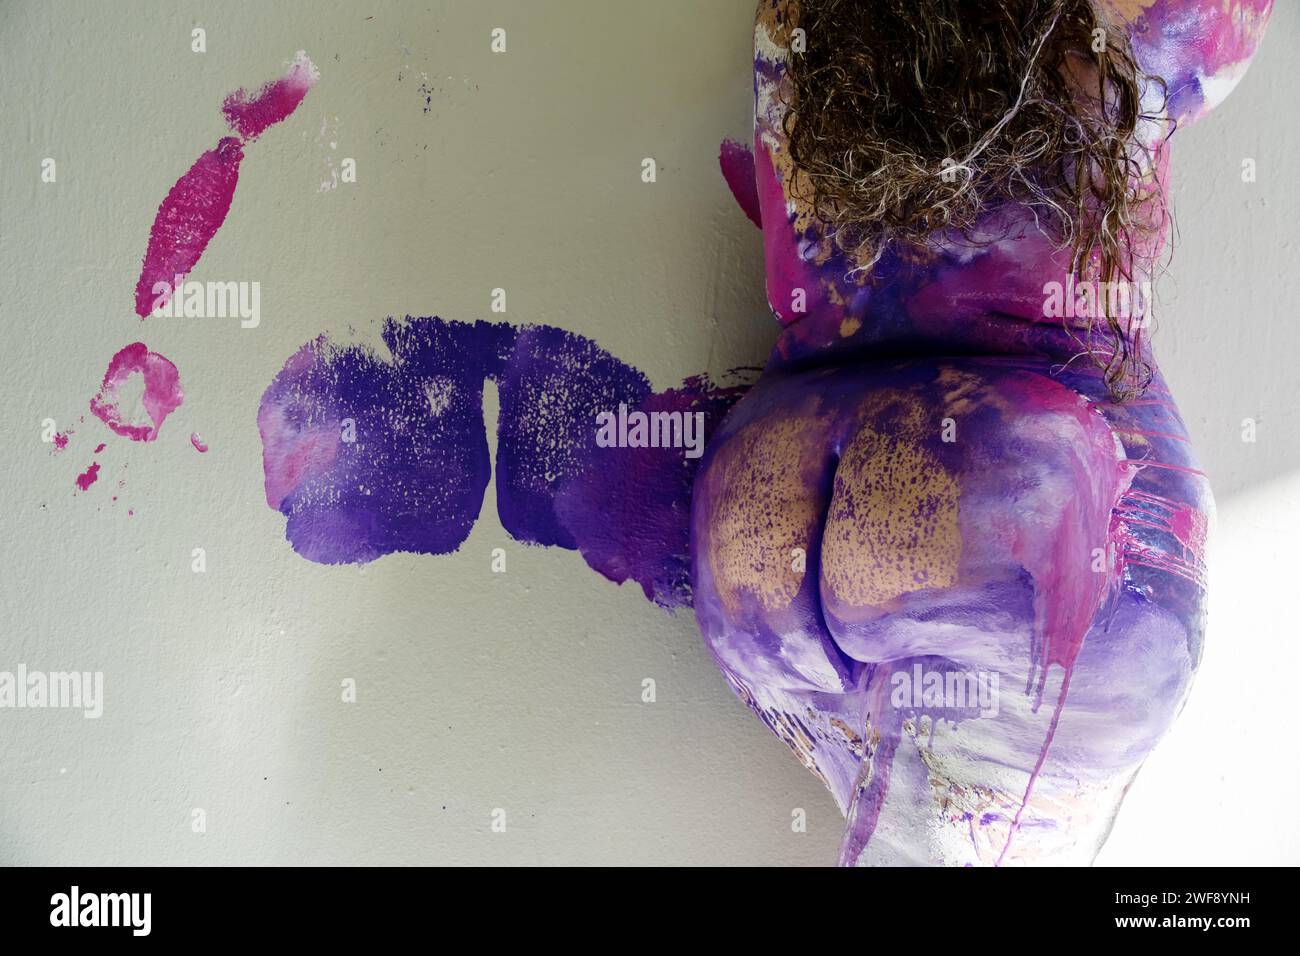 La parte posteriore e inferiore di una bella donna nuda grassa in sovrappeso, paffuta bodypainting di colore rosa, viola, bianco e blu, che ha lasciato un grasso bot Foto Stock